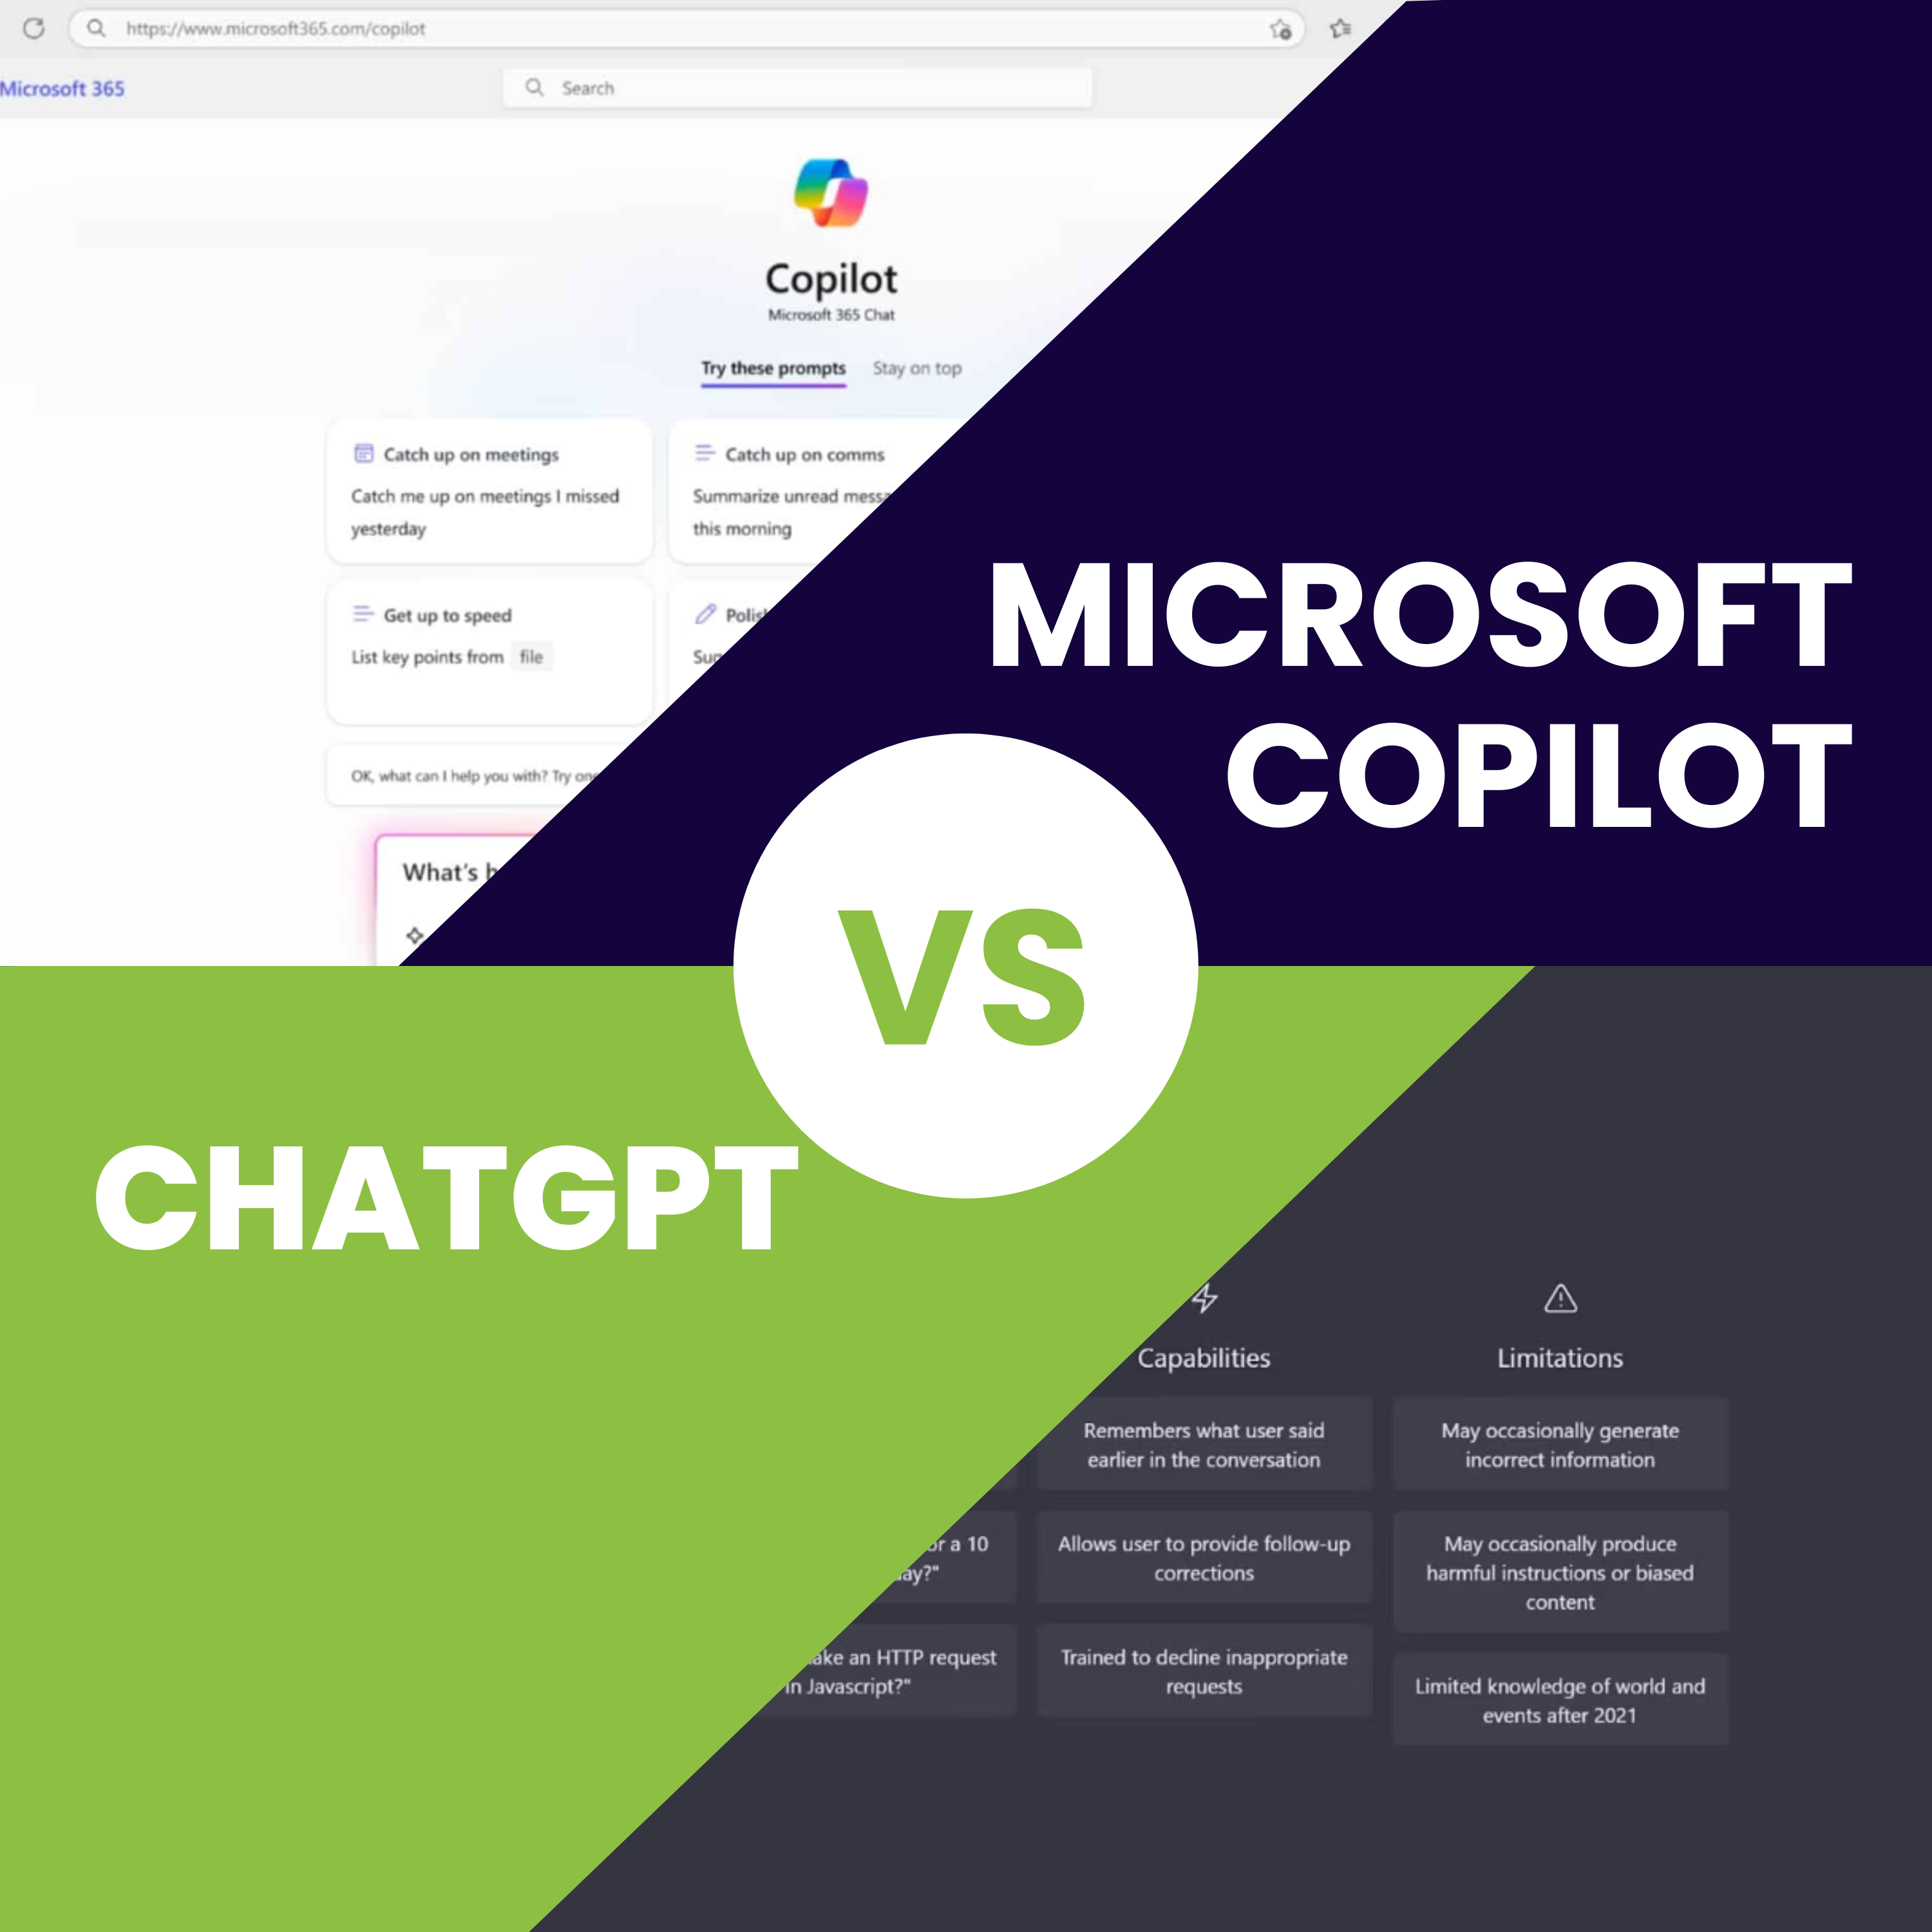 Chatgpt vs Microsoft Copilot